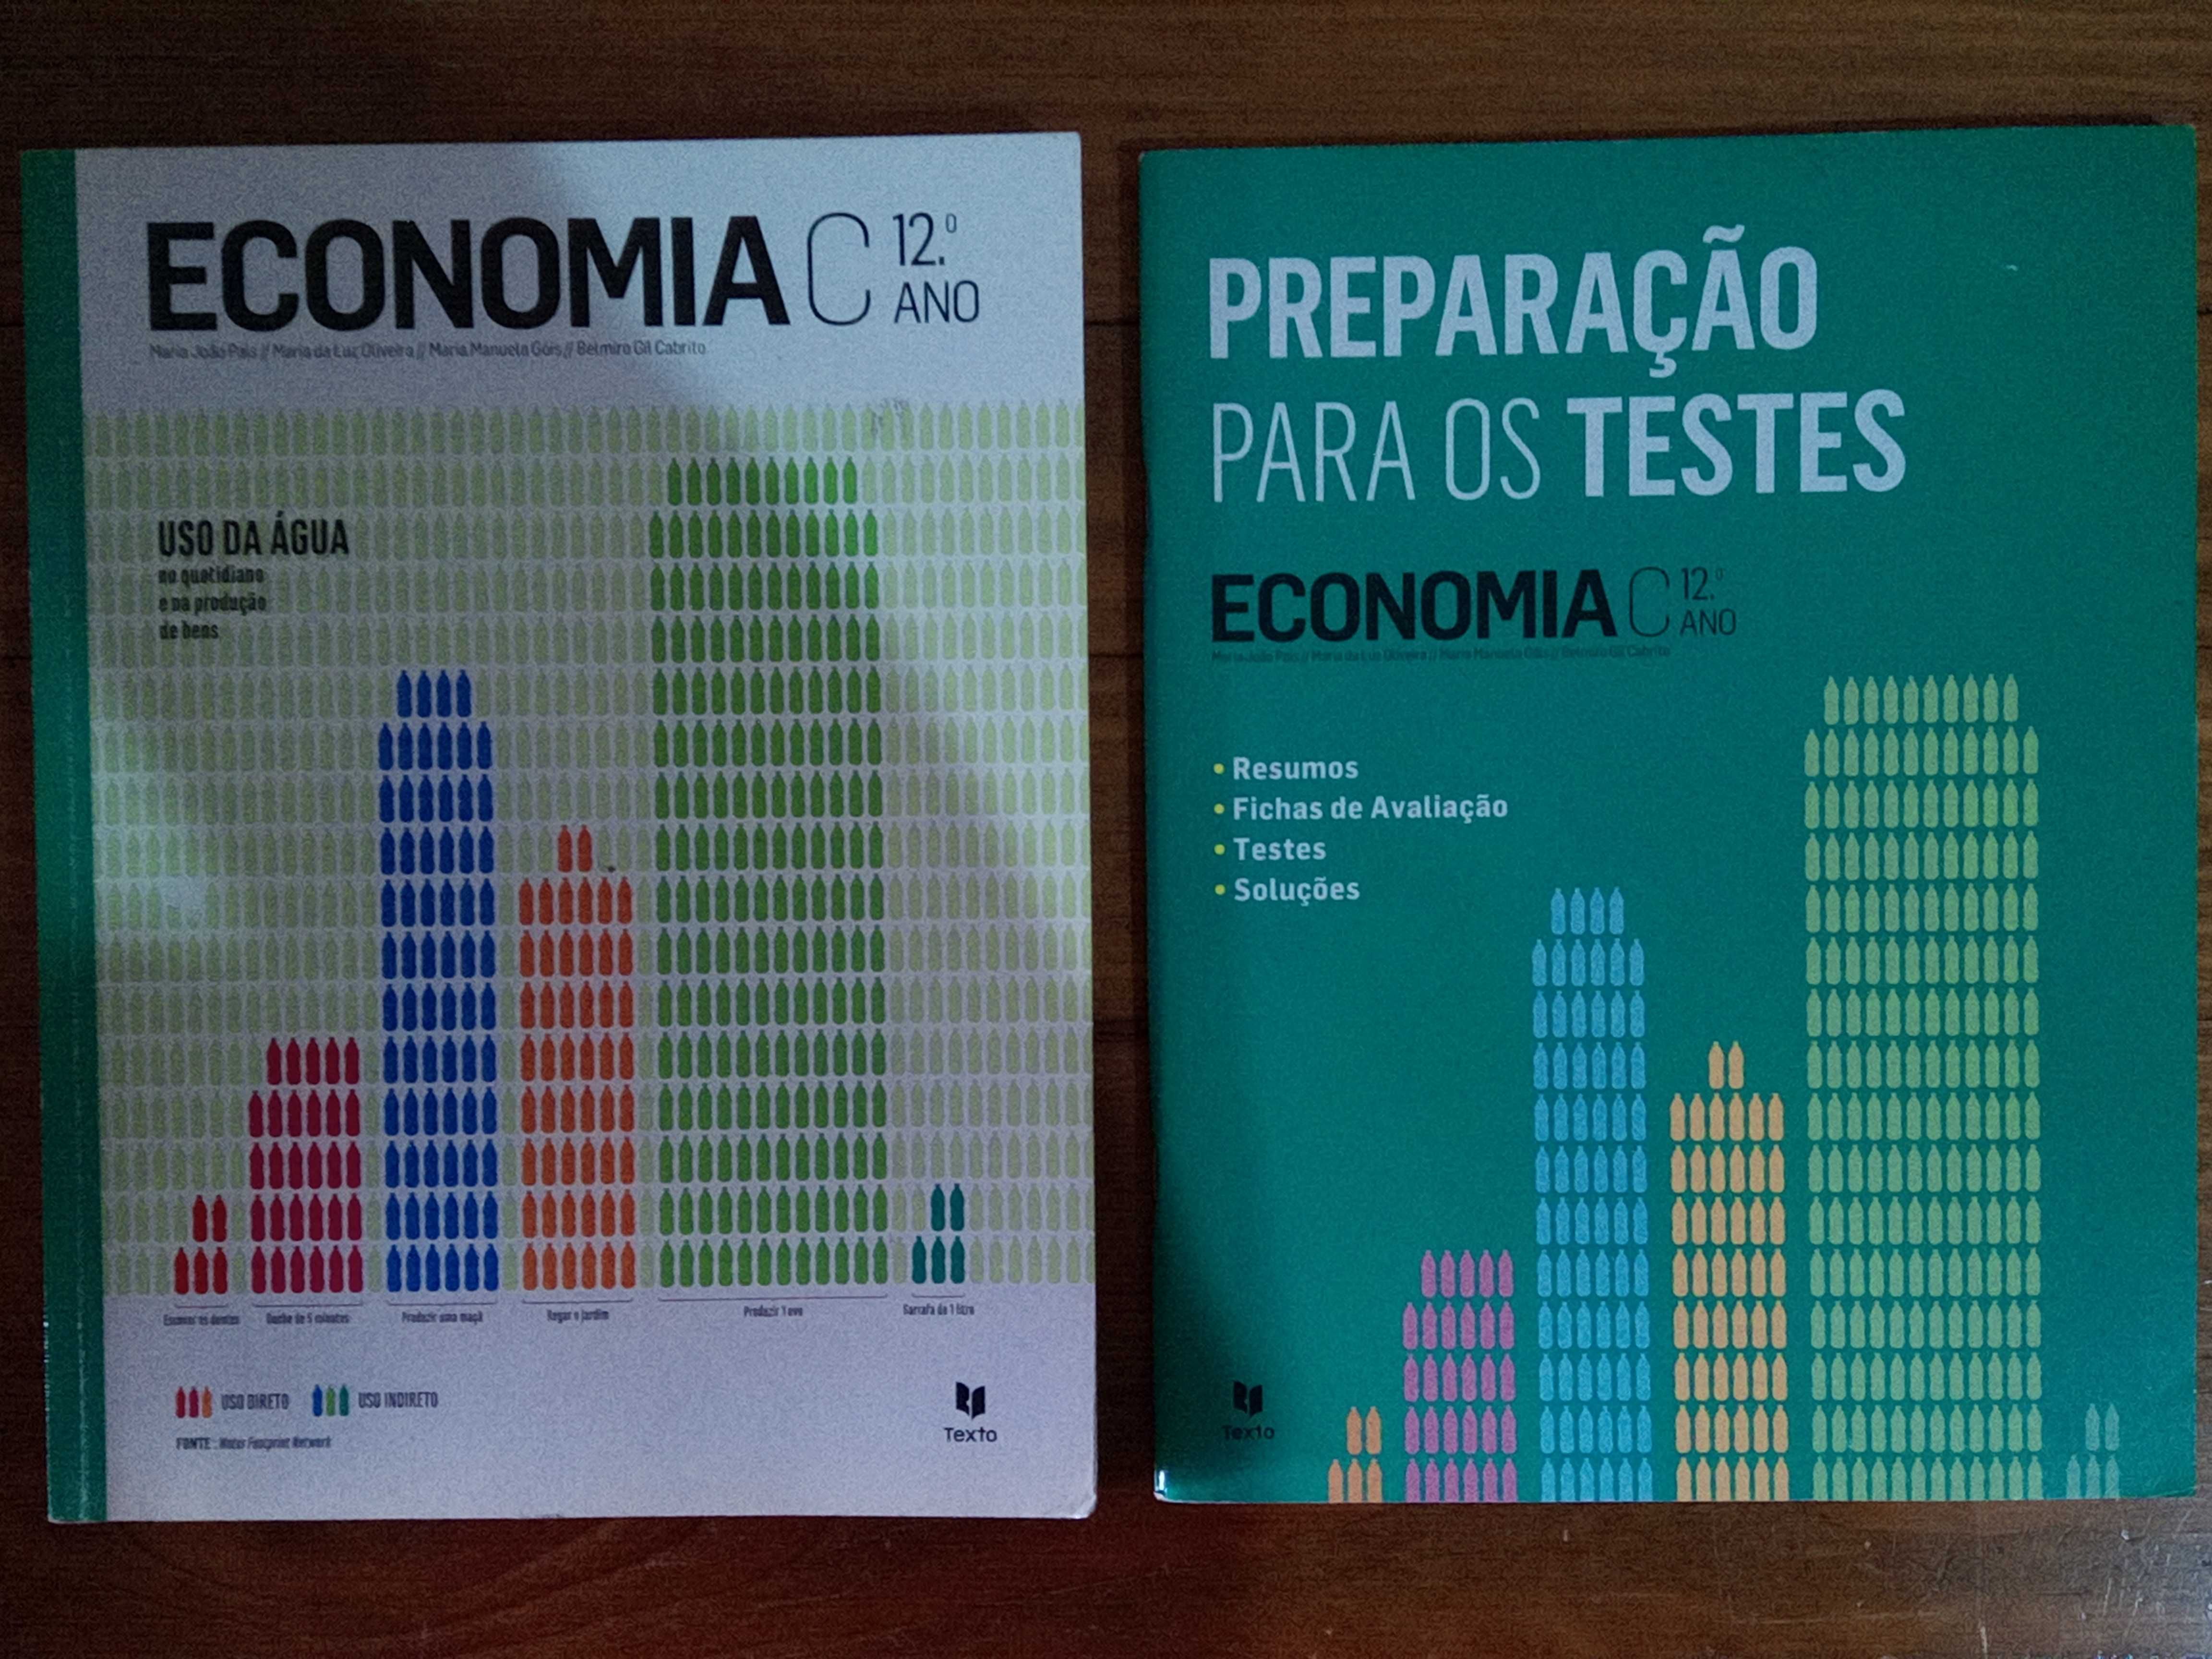 Economia C manual + livro de preparação para testes, 12º ano.